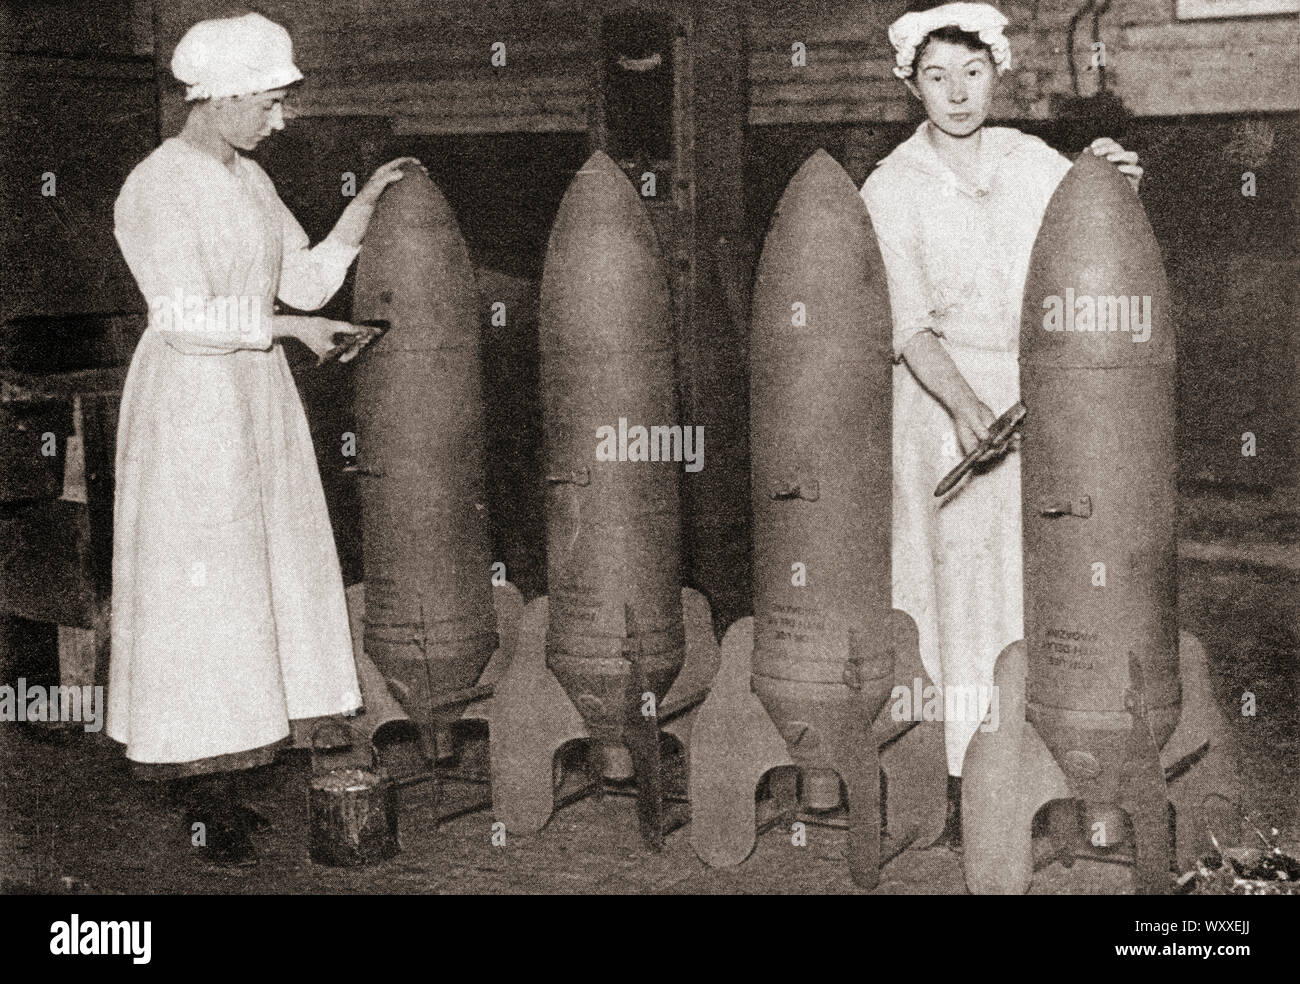 Frauen, eine Farbschicht auf Antenne Bomben während des Ersten Weltkrieges. Aus dem Festzug des Jahrhunderts, veröffentlicht 1934. Stockfoto